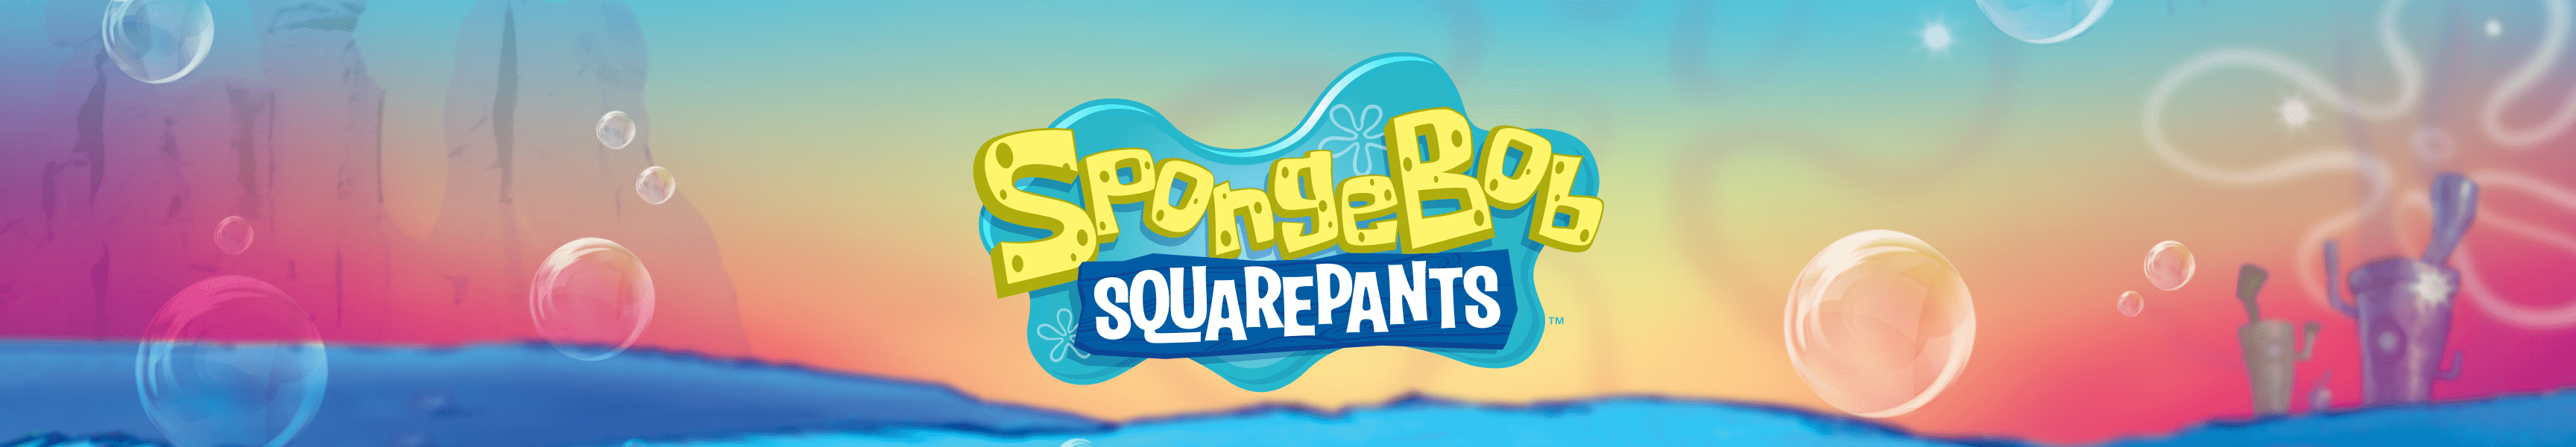 SpongeBob SquarePants New Arrivals